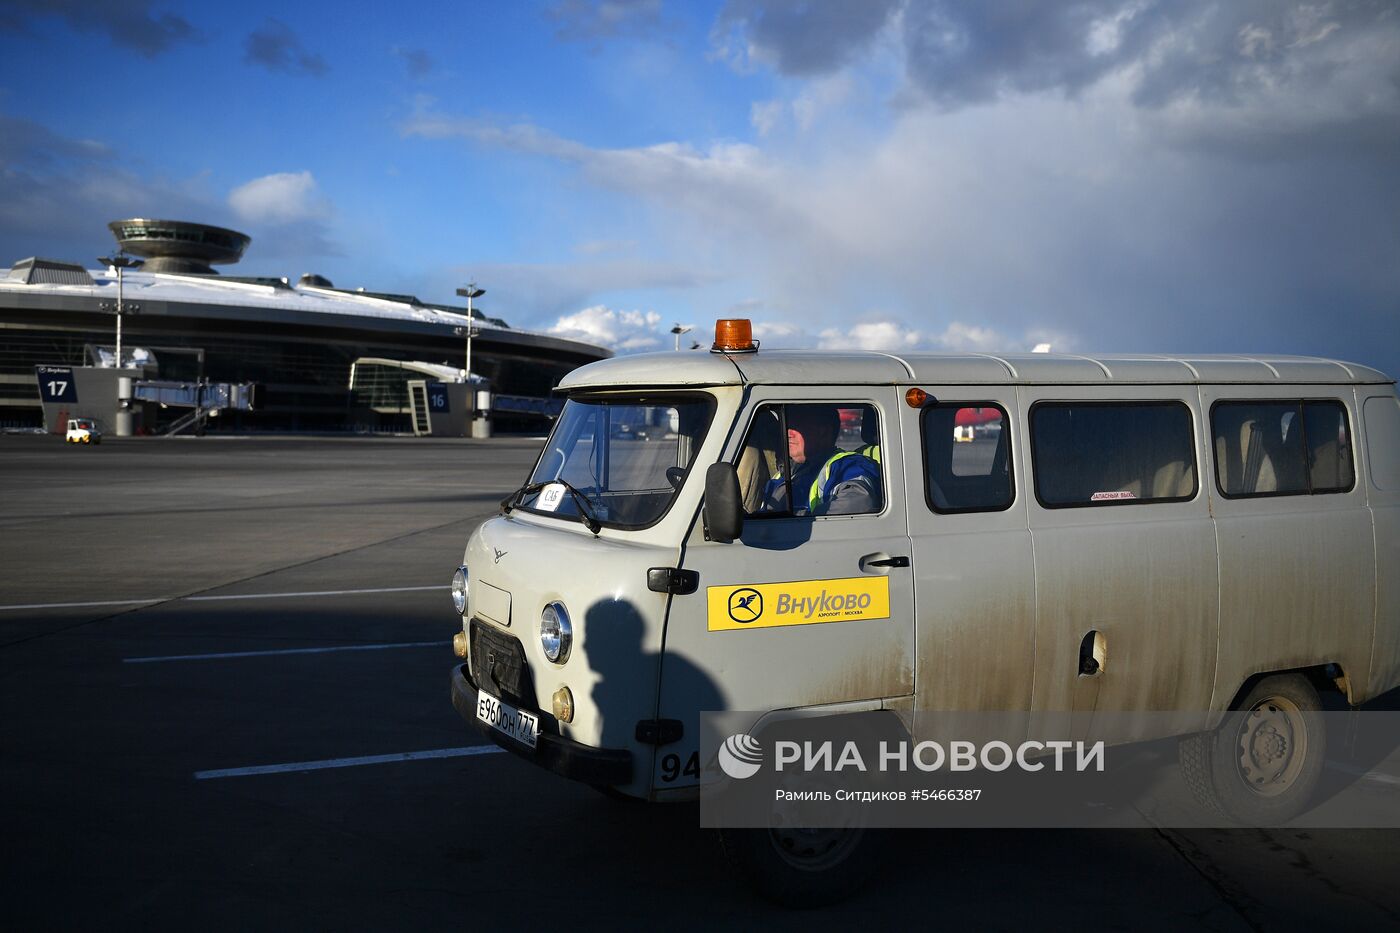 Обслуживание самолета авиакомпании «Победа» в аэропорту Внуково